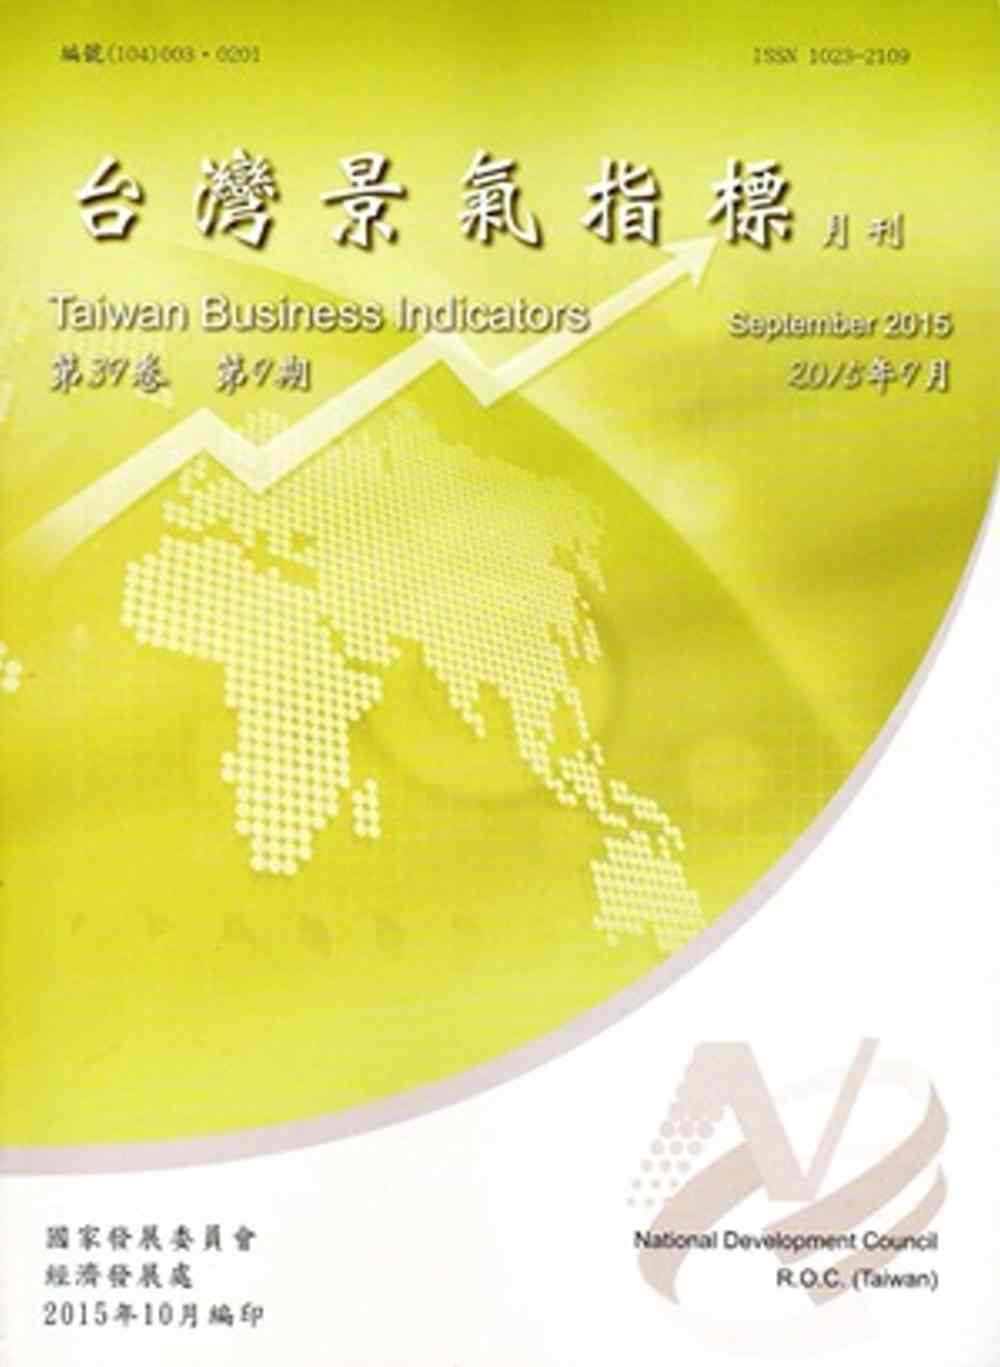 臺灣景氣指標第39卷第9期(104/09)